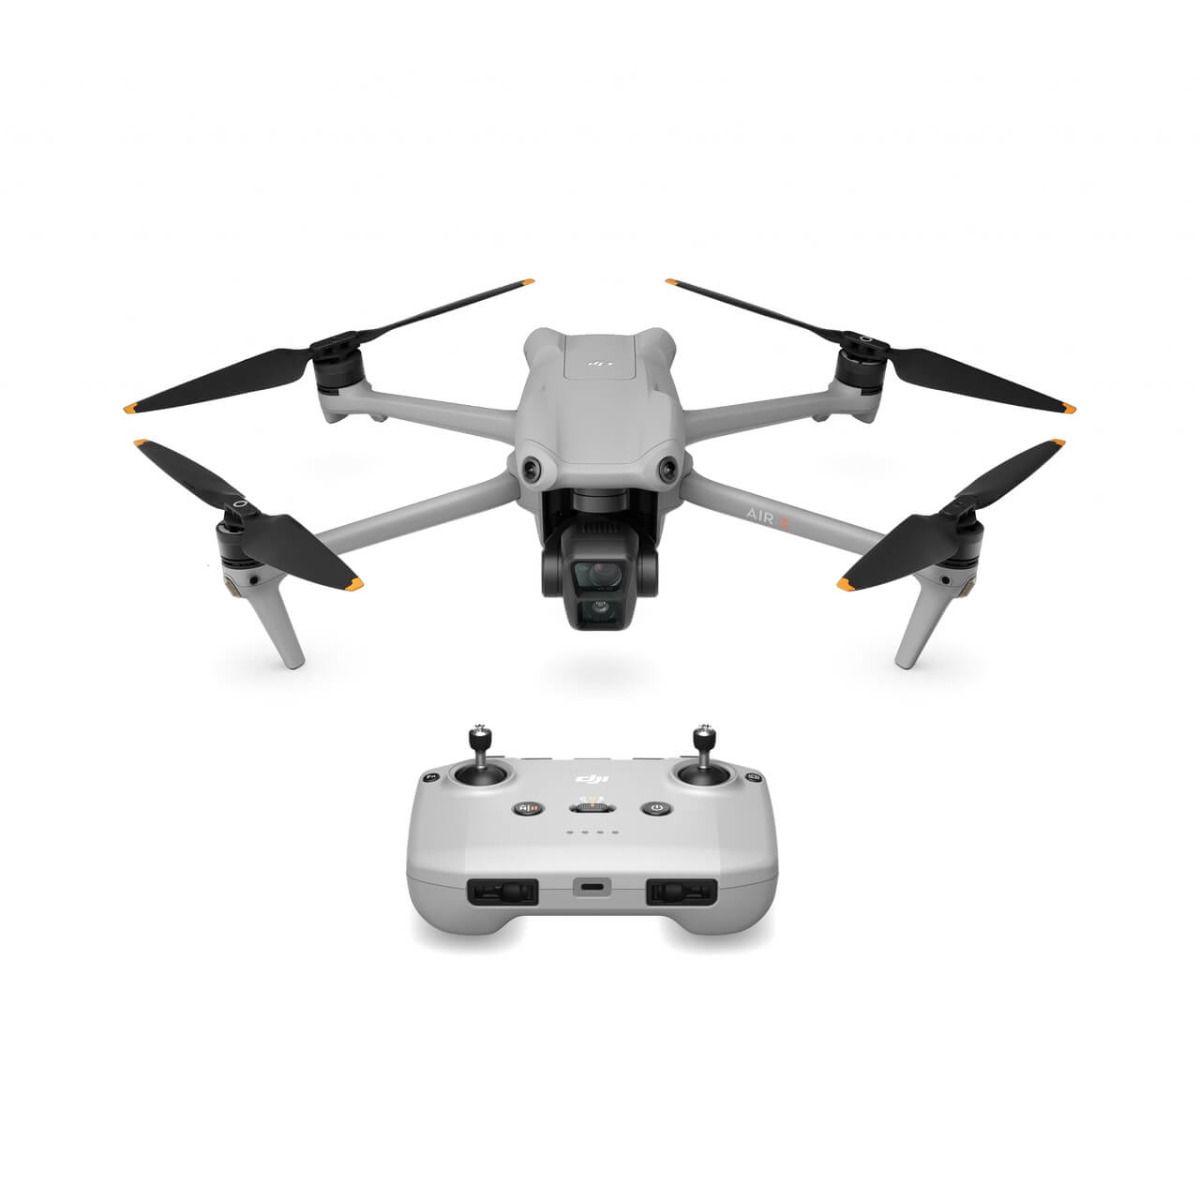 Cuidado y mantenimiento de las baterías de tu drone - DJI